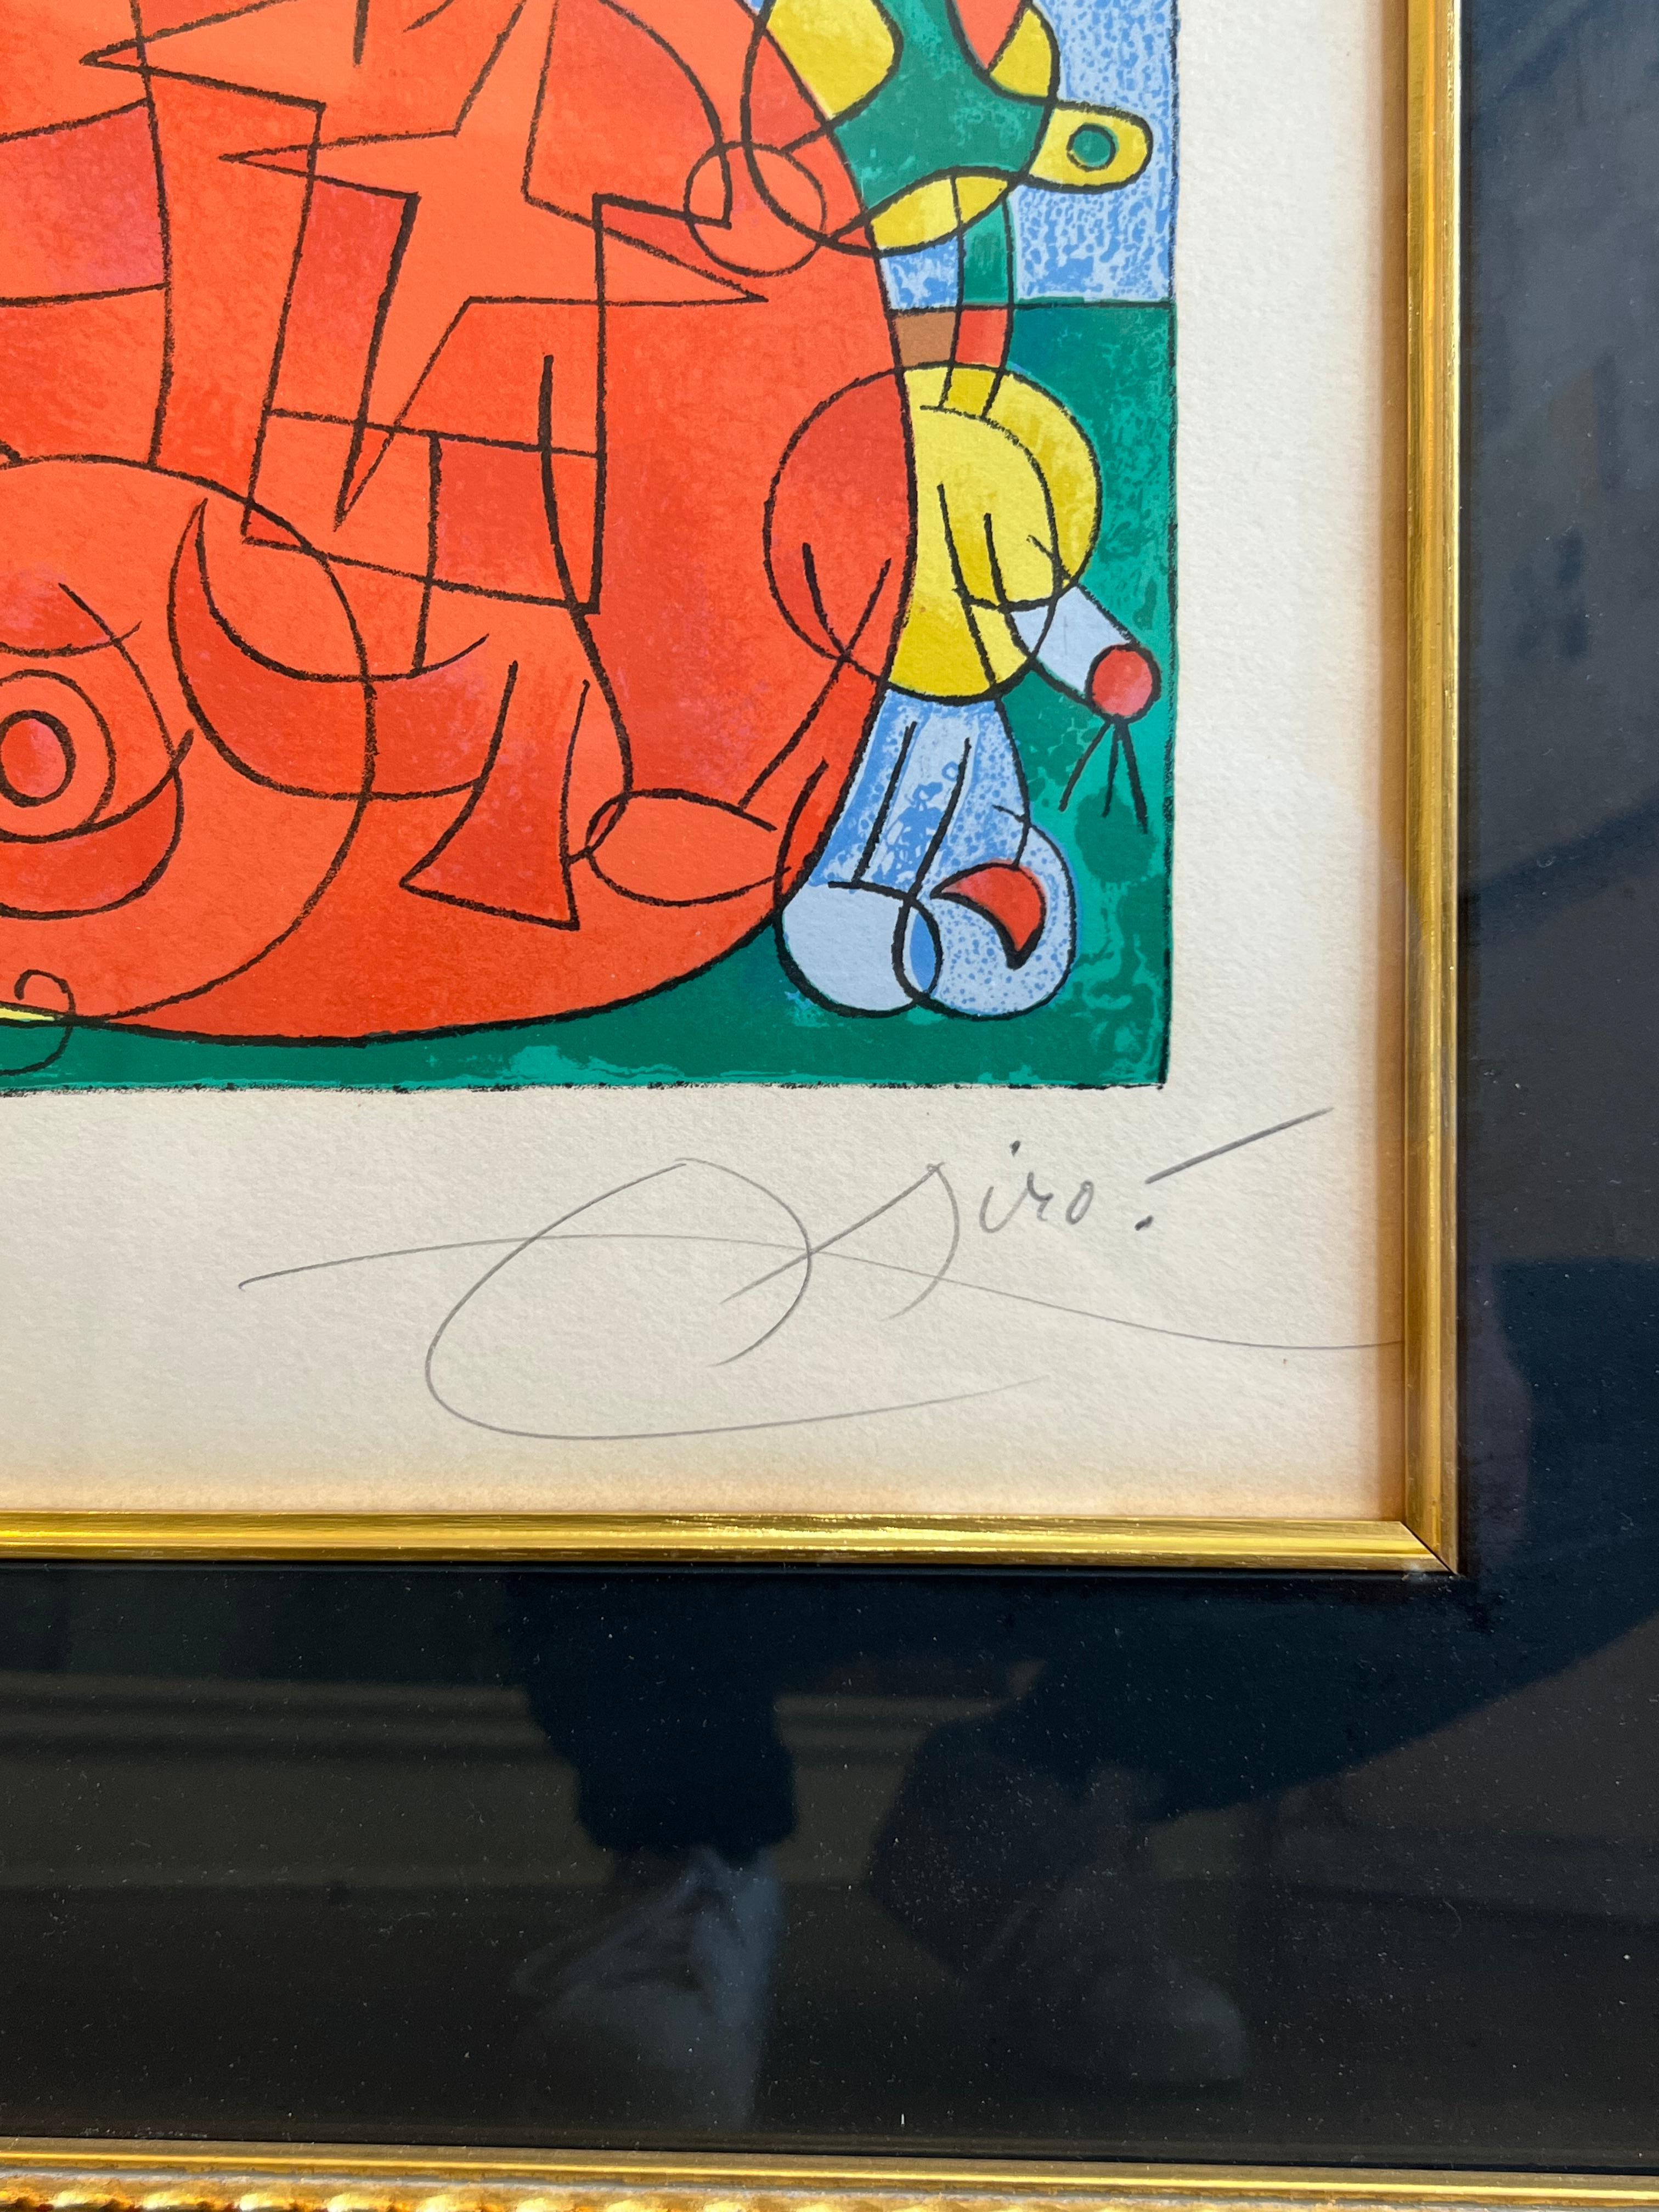 ECHTE AUTHENTISCHE LITHOGRAPHIE mit Bleistift signiert von Joan MIro

Joan Miró
Ubu roi (König Ubu): Tafel 3
1966
Farblithographie auf Arches-Papier, vollrandig.
I. 16 x 24 5/8 Zoll. 
S. 21 1/8 x 29 1/2 in. 
Mit Rahmen 34x42 Zoll

Unterzeichnet und